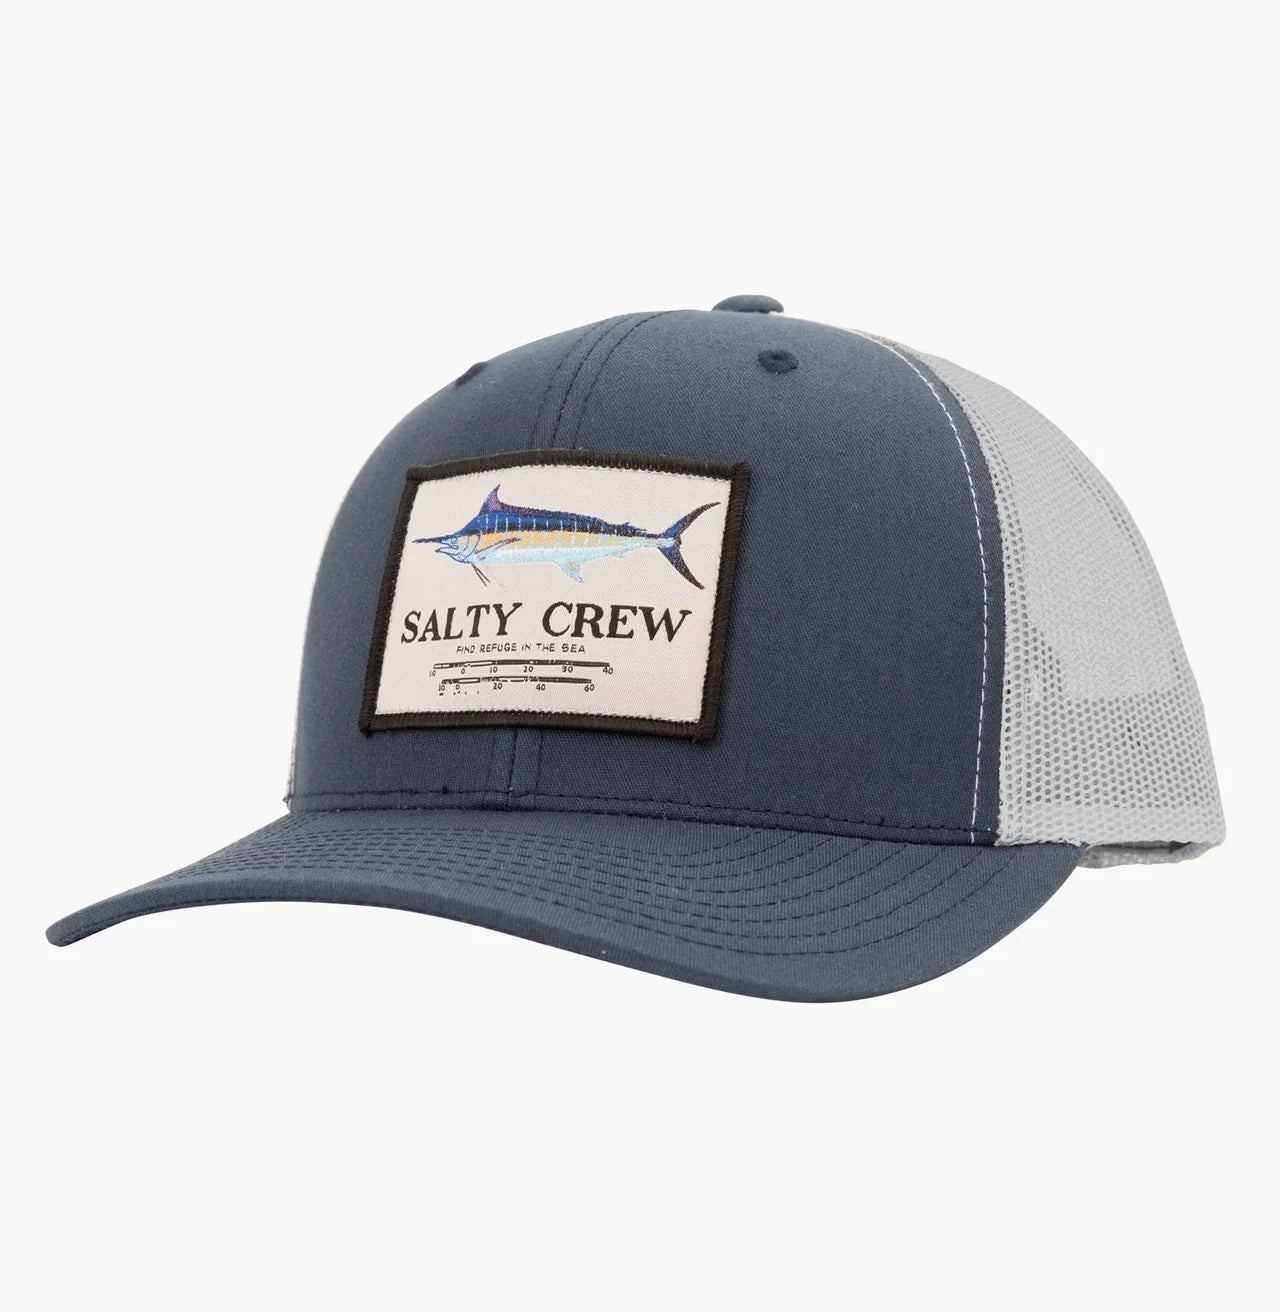 Salty Crew Marlin Mount Retro Trucker Hat